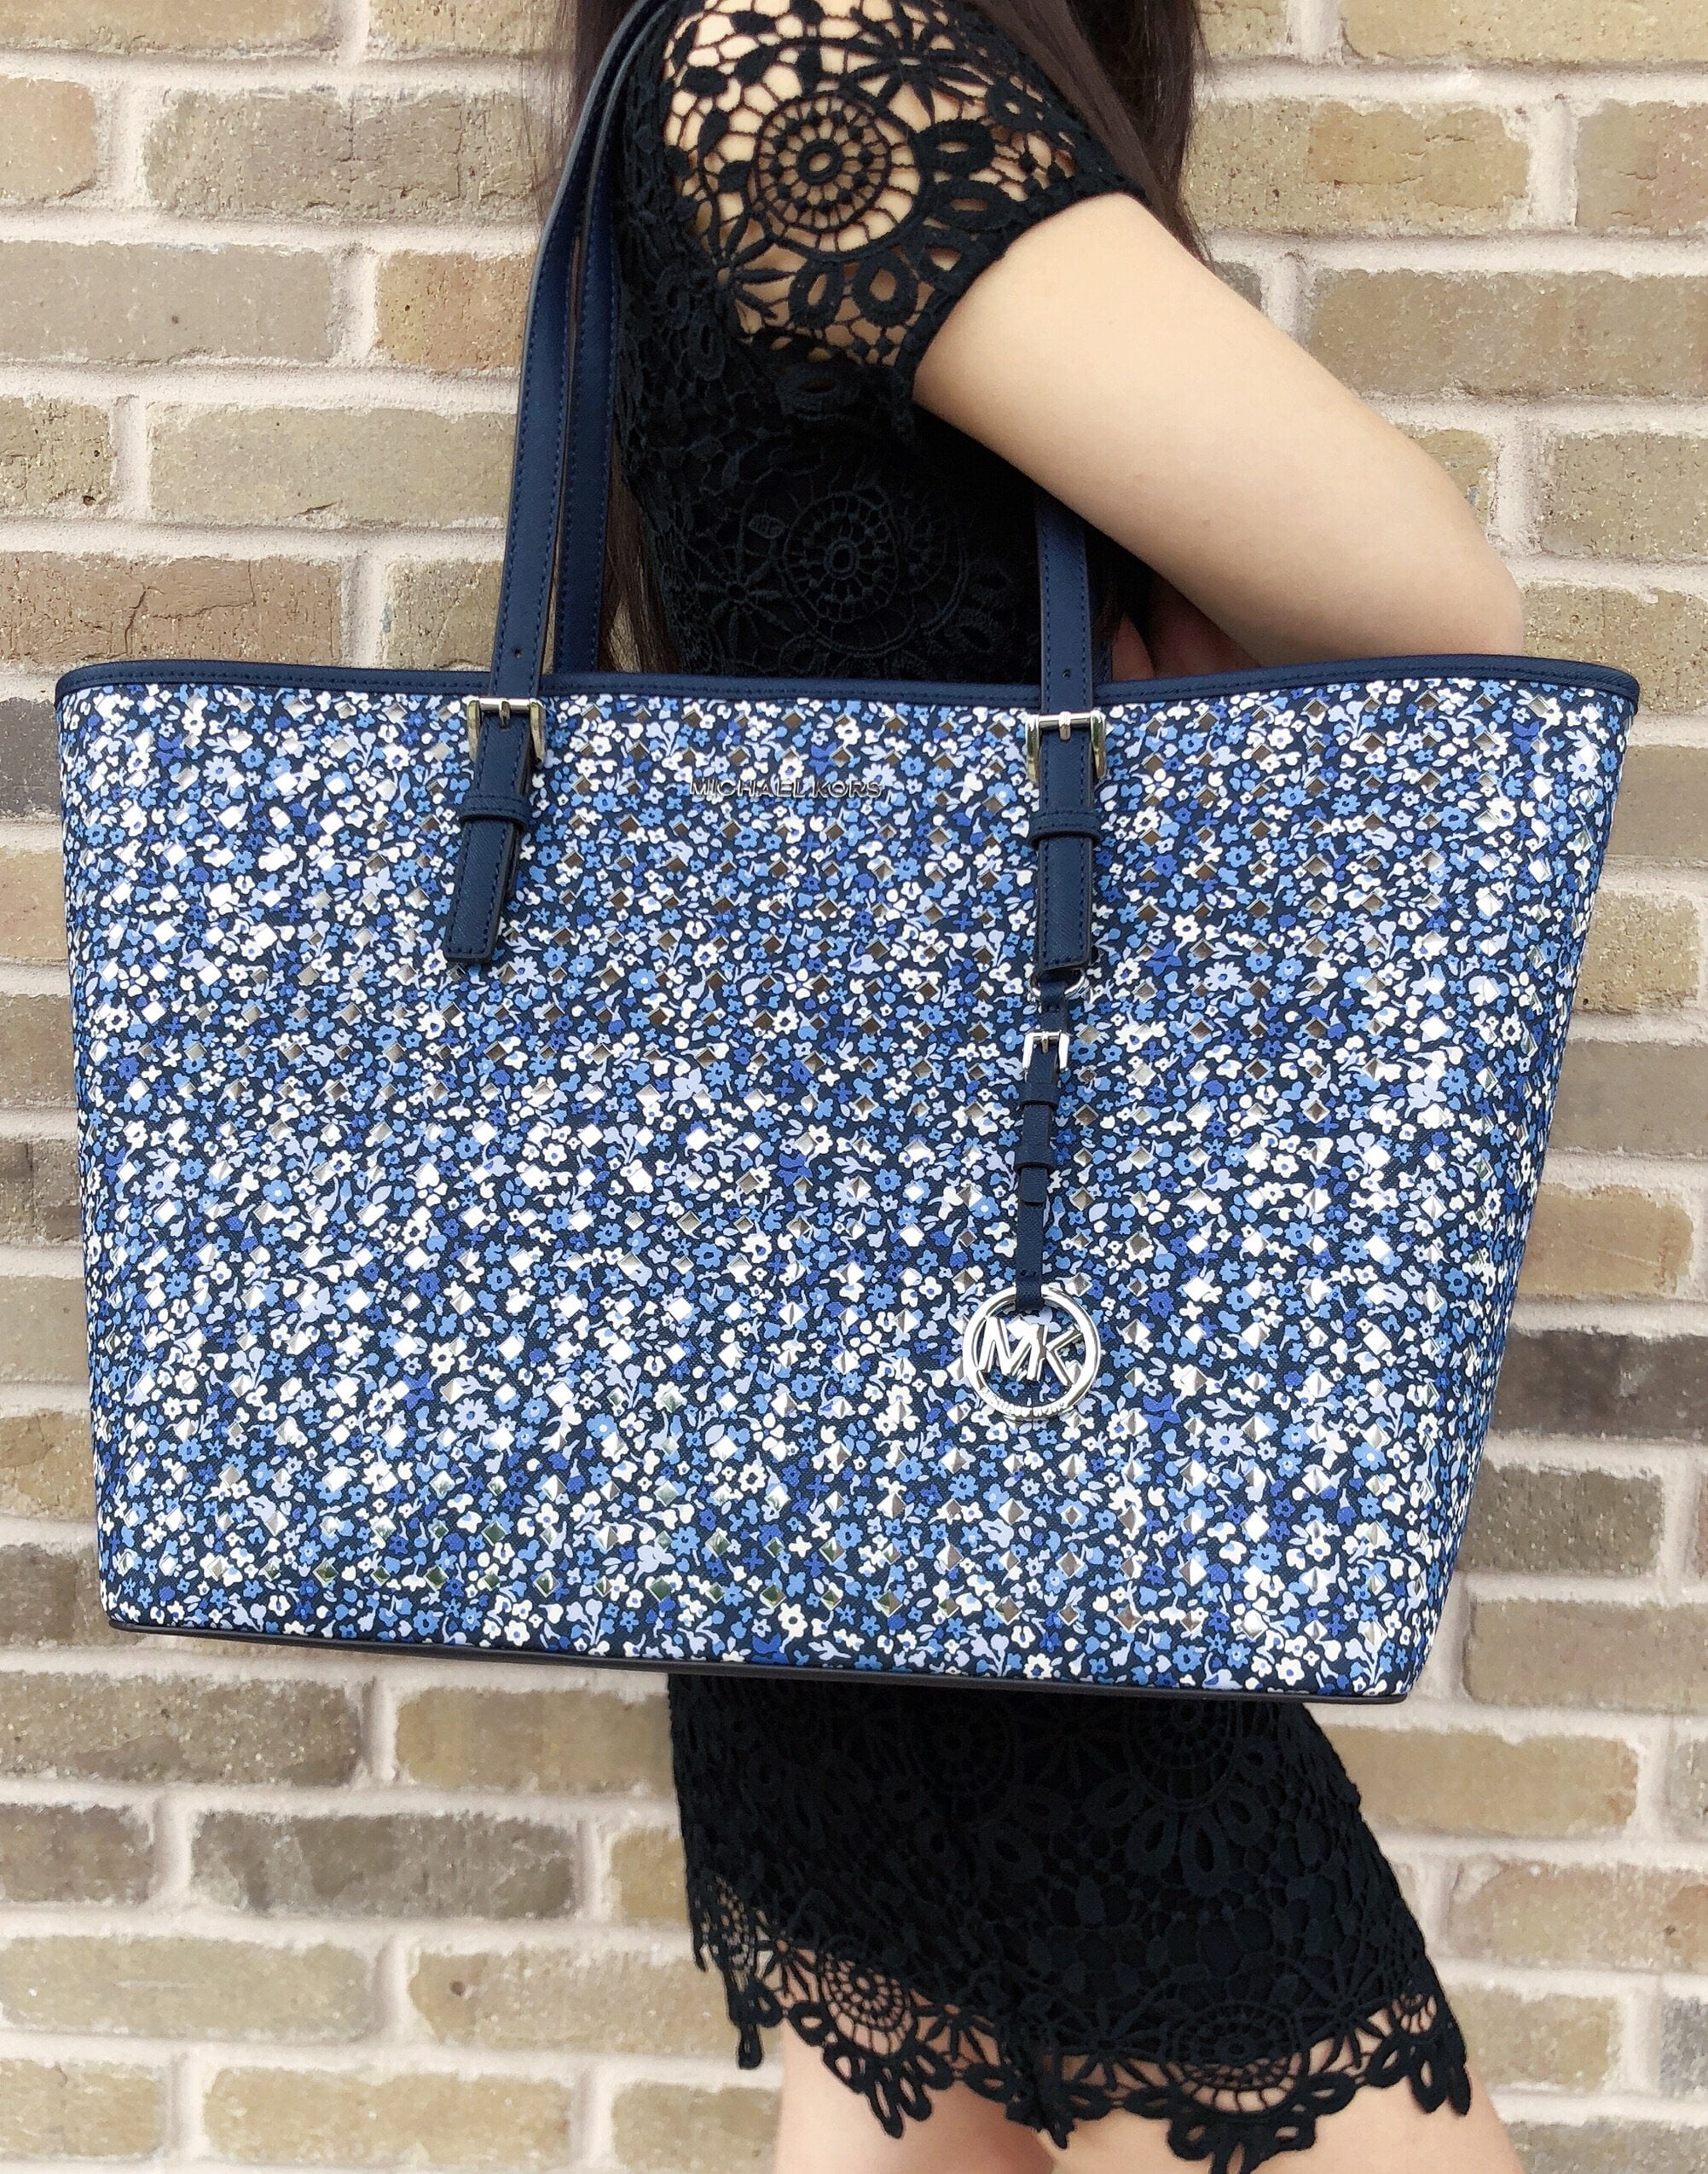 michael kors blue floral purse